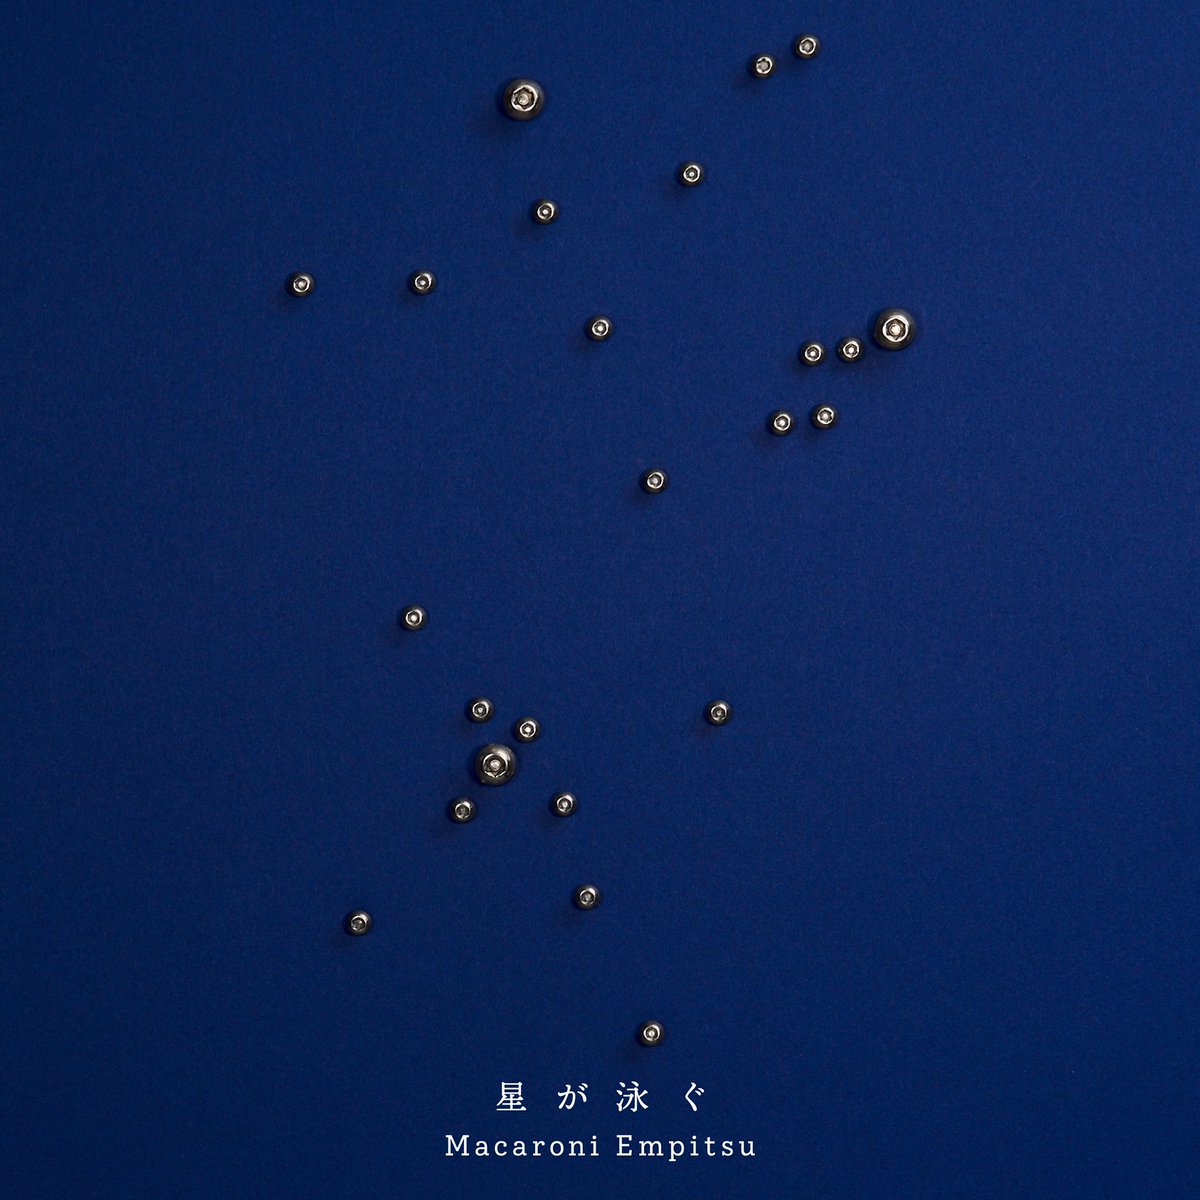 Cover for『Macaroni Empitsu - Hoshi ga Oyogu』from the release『Hoshi ga Oyogu』